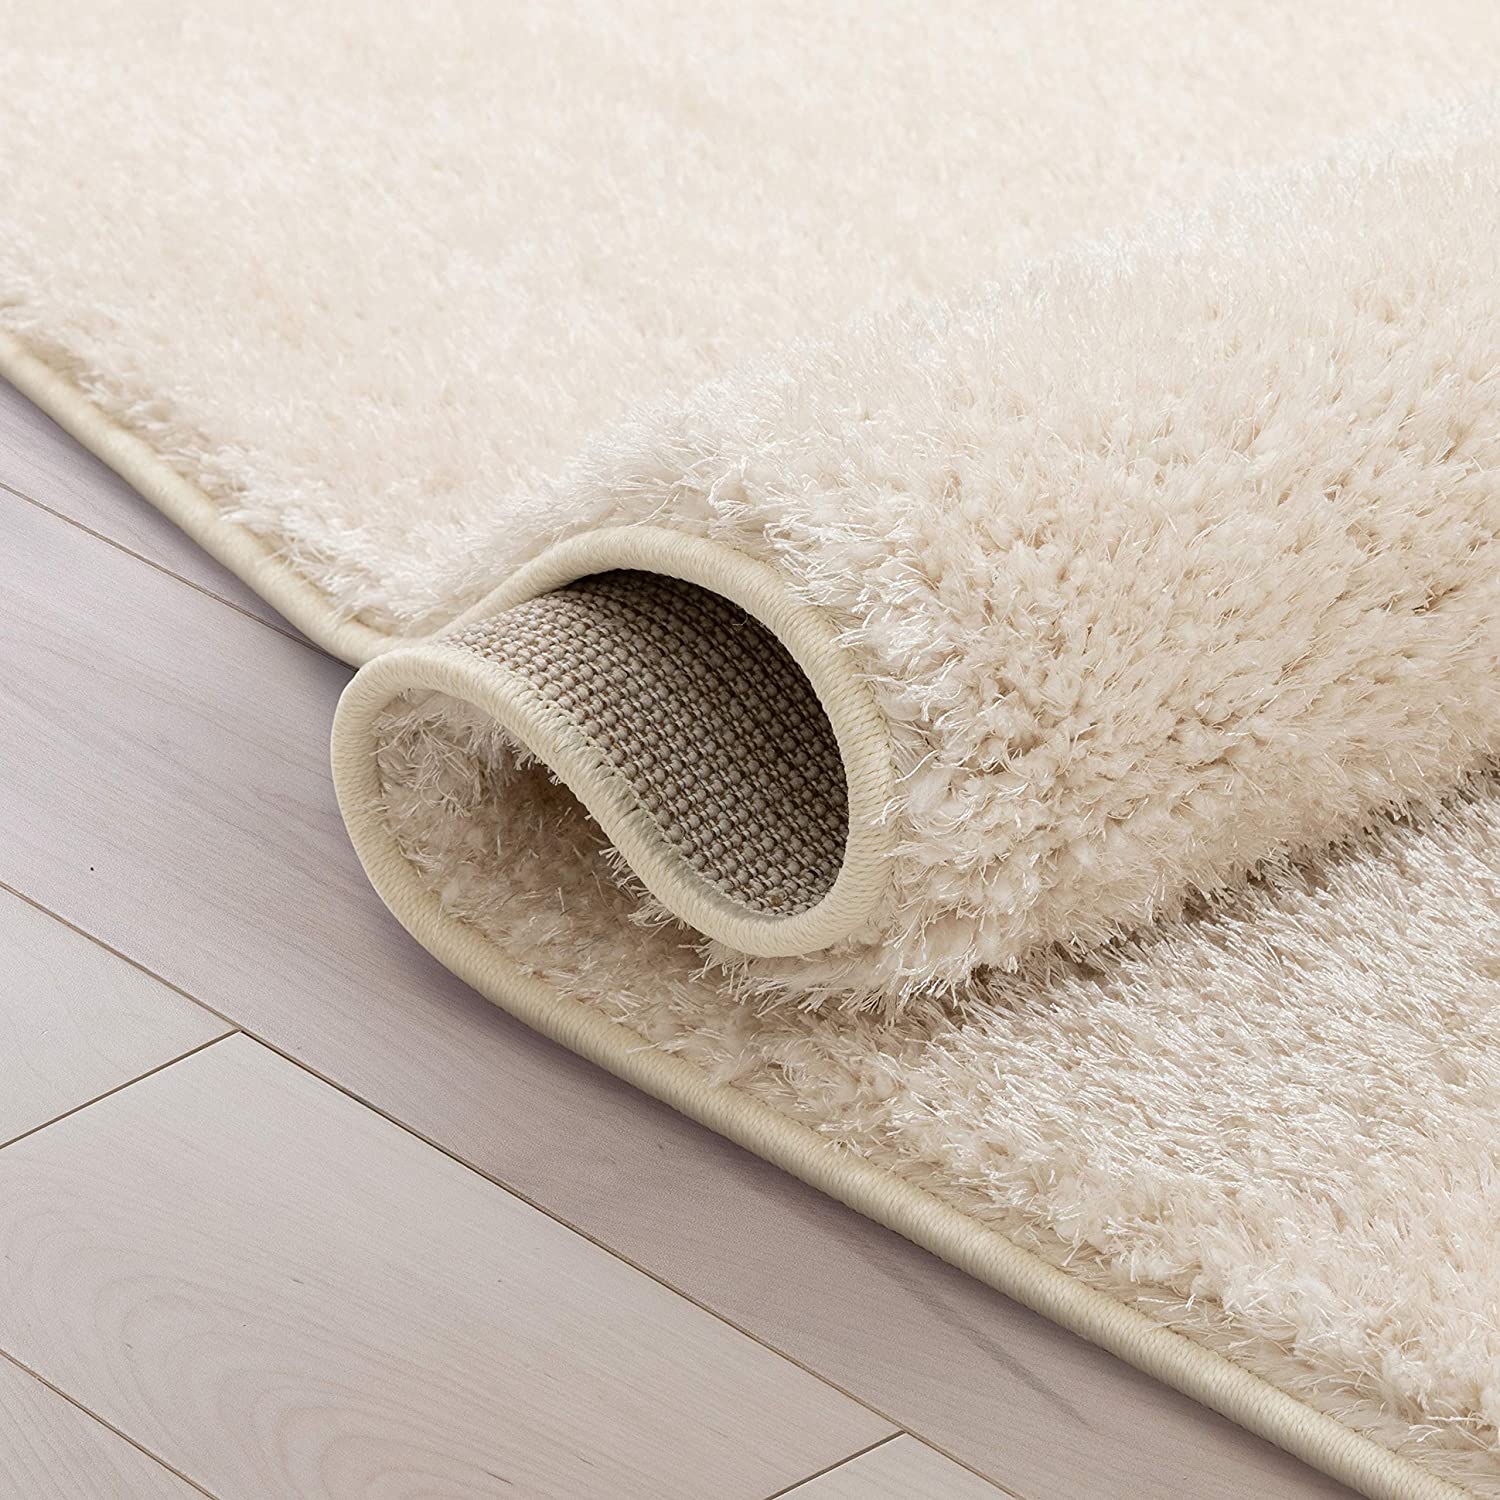 [SIÊU MỀM MẠI] Thảm chân giường, thảm lau chùi chân, thảm trải sàn nhập khẩu CAO CẤP, Thảm Lông Cừu (60x160cm)